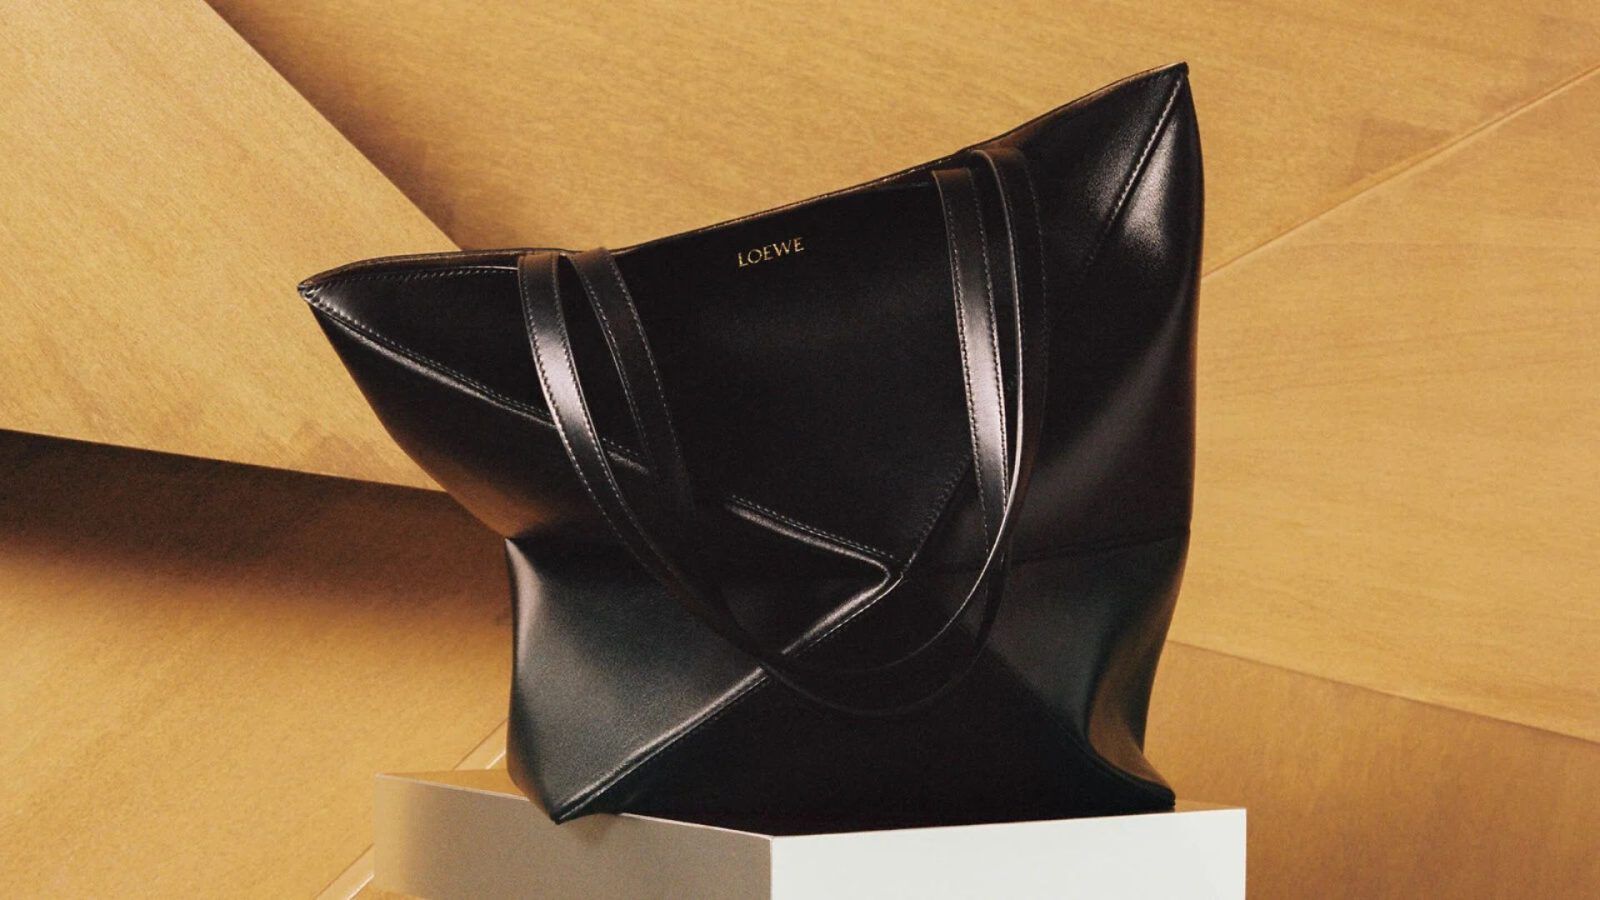 Hammock Small Leather Shoulder Bag in Beige - Loewe